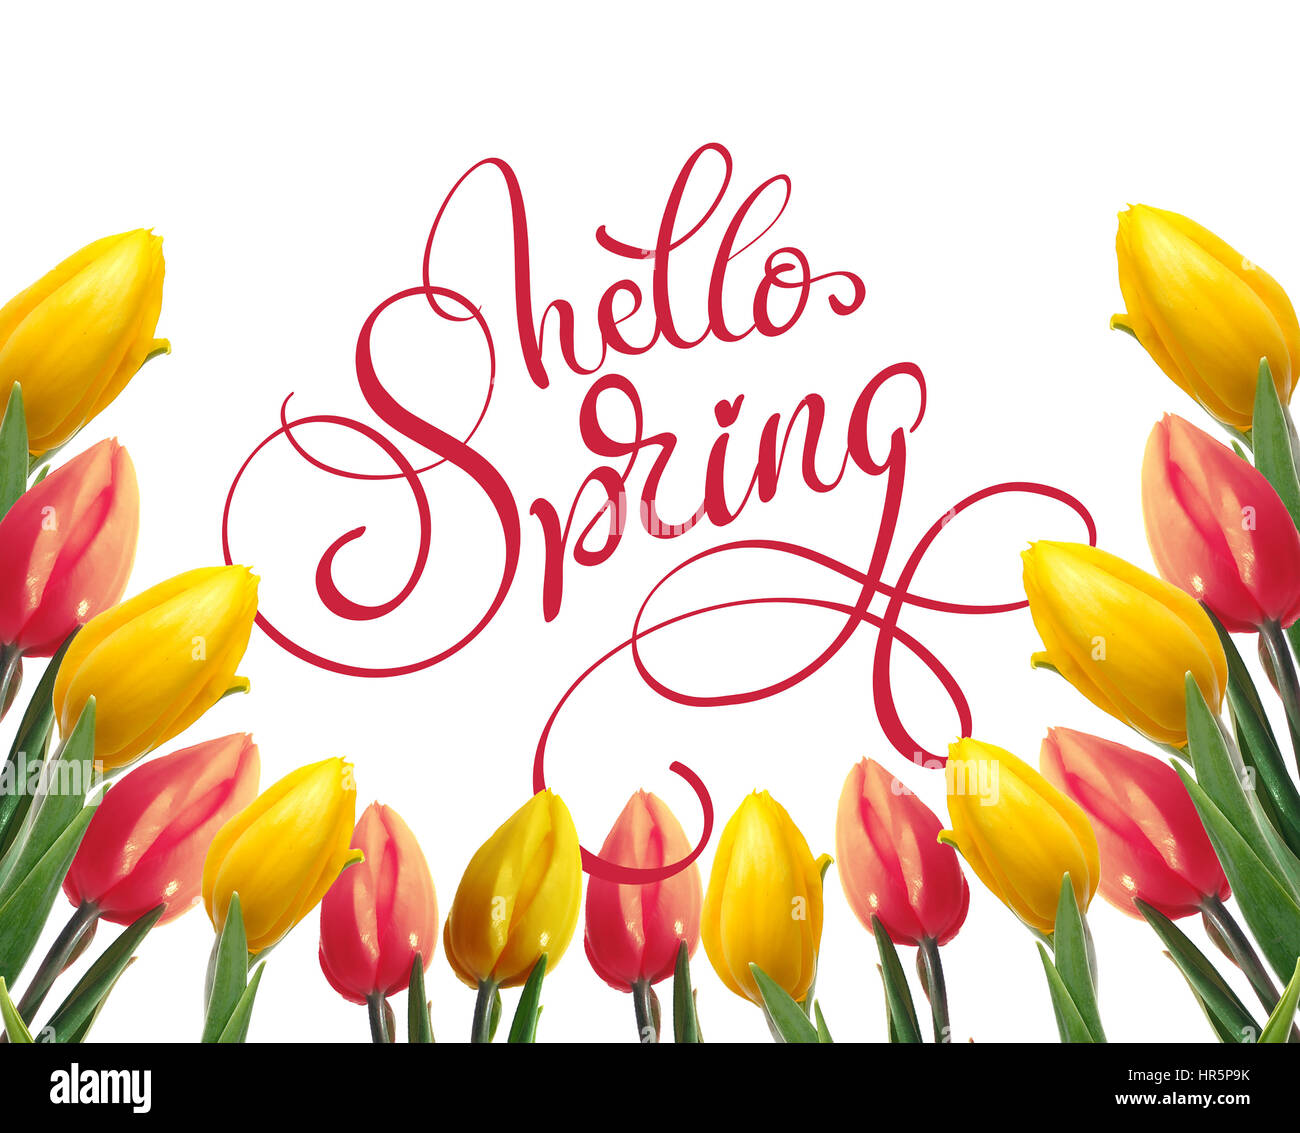 Rahmen der gelbe und rote Tulpen auf einen weißen Hintergrund und Text Hallo Frühling. Kalligraphie-Schriftzug. Stockfoto